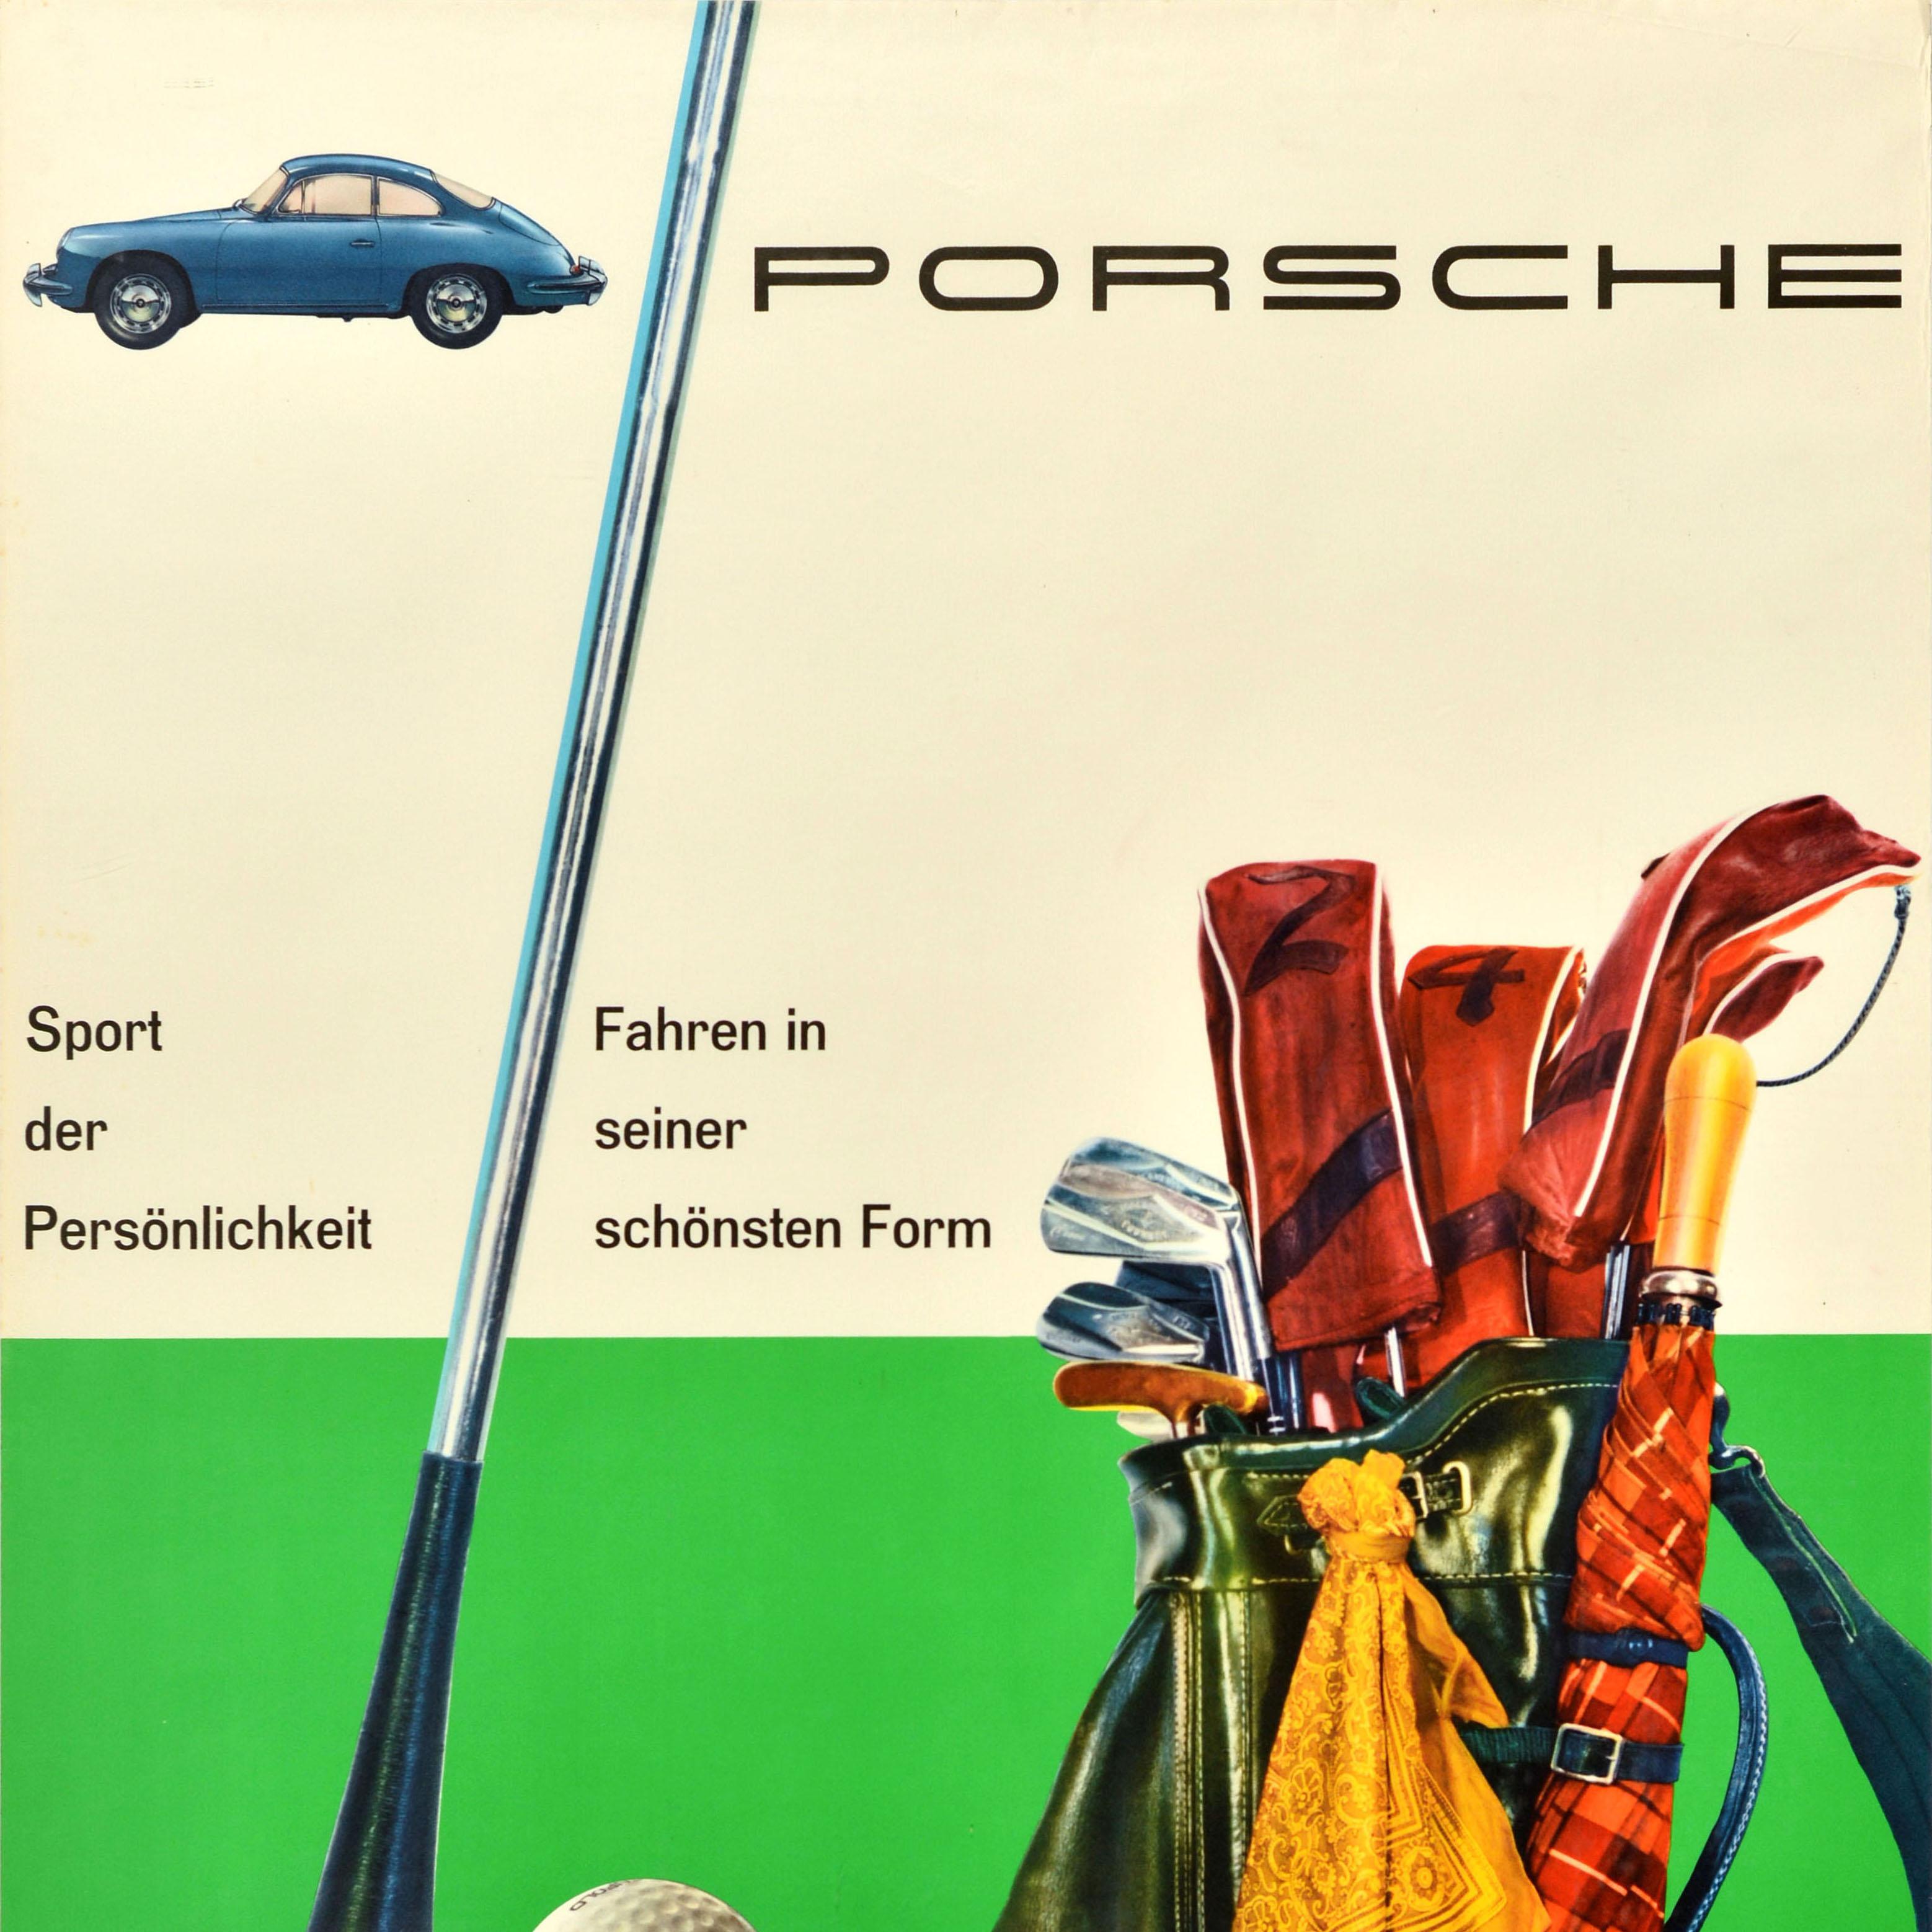 Original Oldtimer-Werbeplakat für Porsche Sport der Personlichkeit Fahren in seiner schonsten Form / Sport of personality Driving in its finest Form mit einer Illustration eines blauen Porsche neben dem Titeltext über einem Bild einer Golftasche und